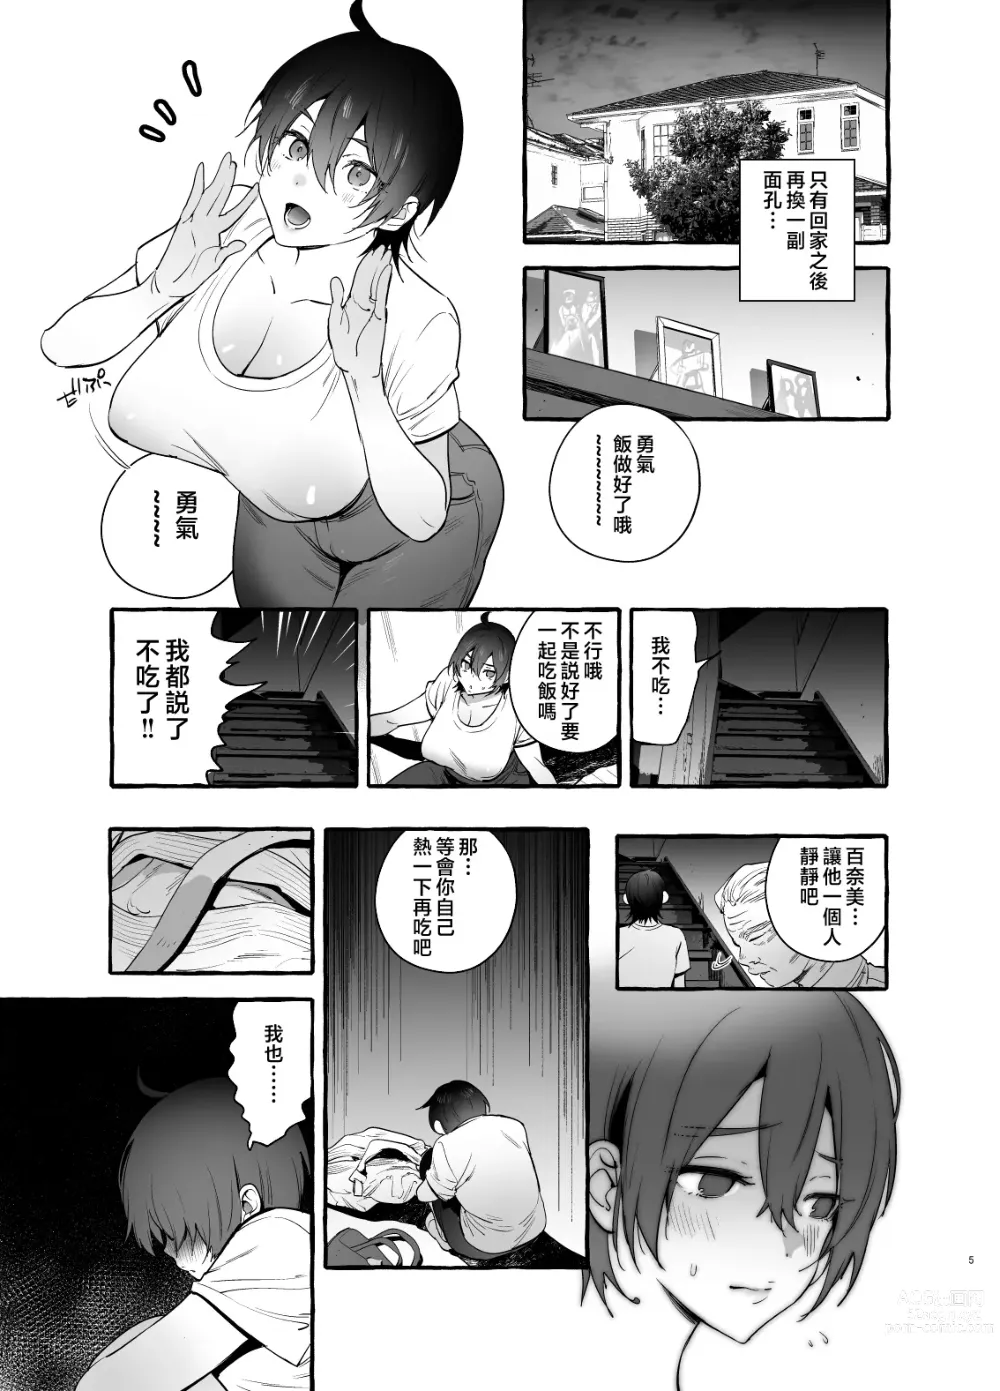 Page 6 of doujinshi Deka Tsuyo Mama wa Boku ni Amai.